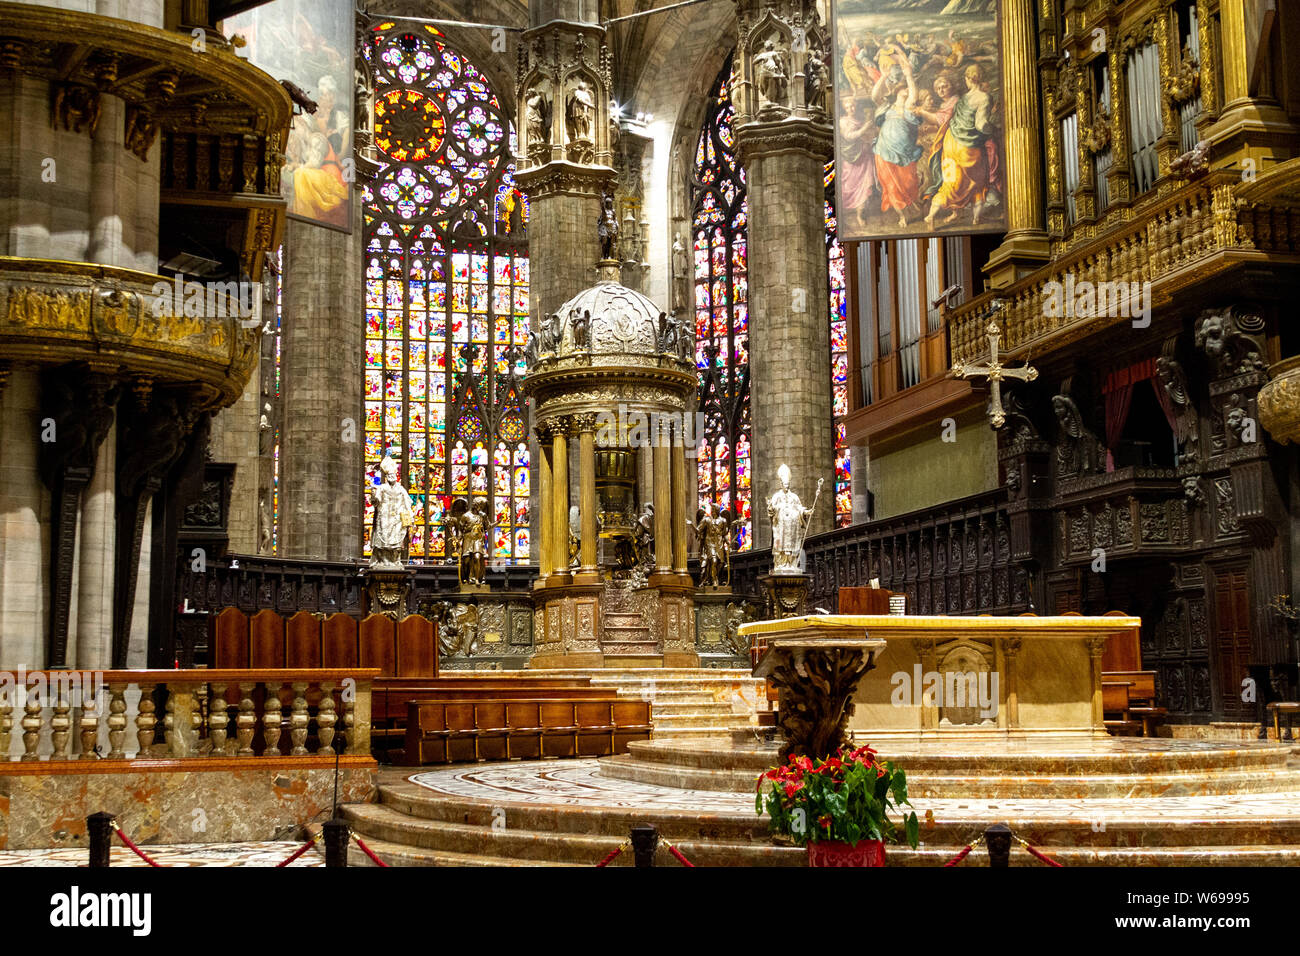 Der Altar mit Glasfenster im Hintergrund. Duomo di Milano (Mailand Dom). Stockfoto